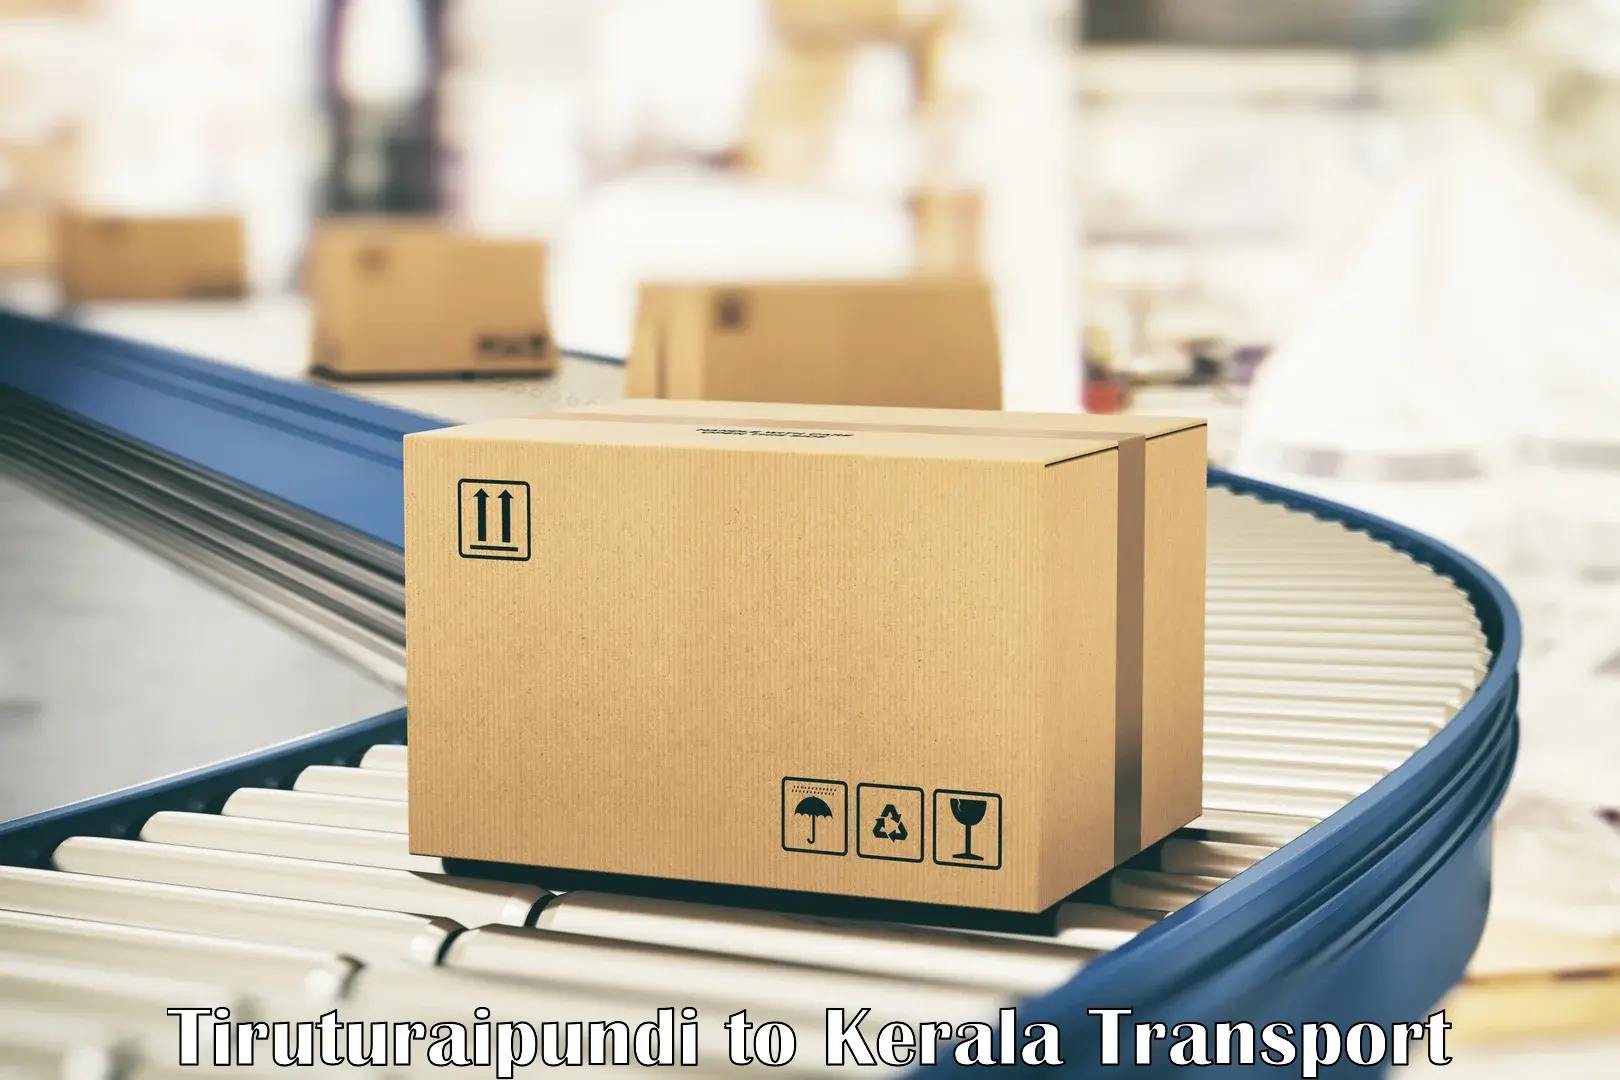 Daily parcel service transport Tiruturaipundi to Kollam